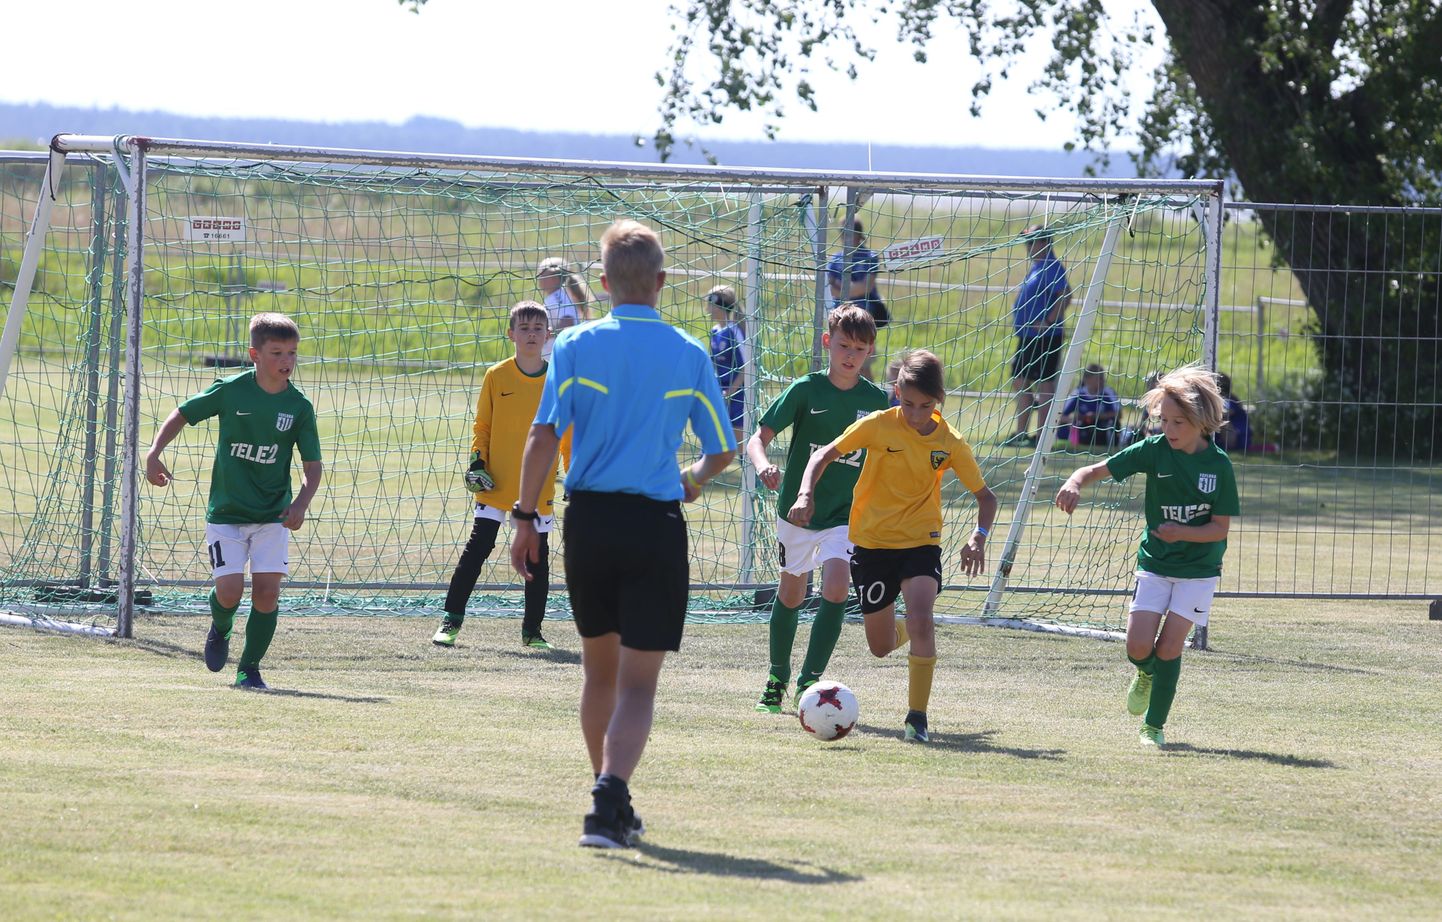 Noorte jalgpallifestivalil “Pärnu Summer Cup 2018” toimuvad esimesed võistlusmängud ja õhtul avamine Vallikäärus.